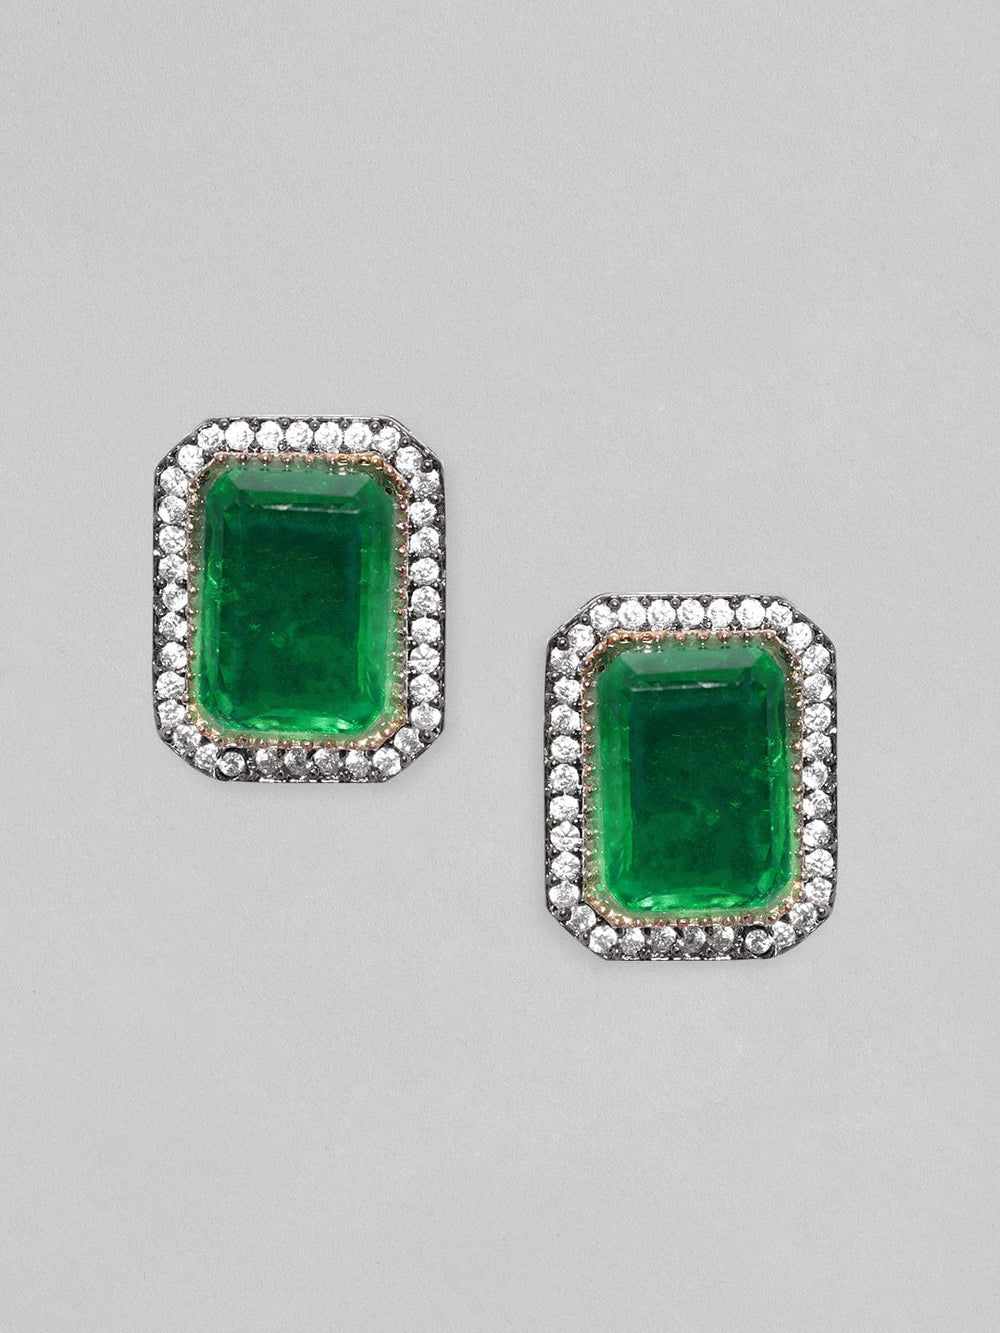 Rubans Black Gold Plated Emerald Doublet Stud Earrings Earrings